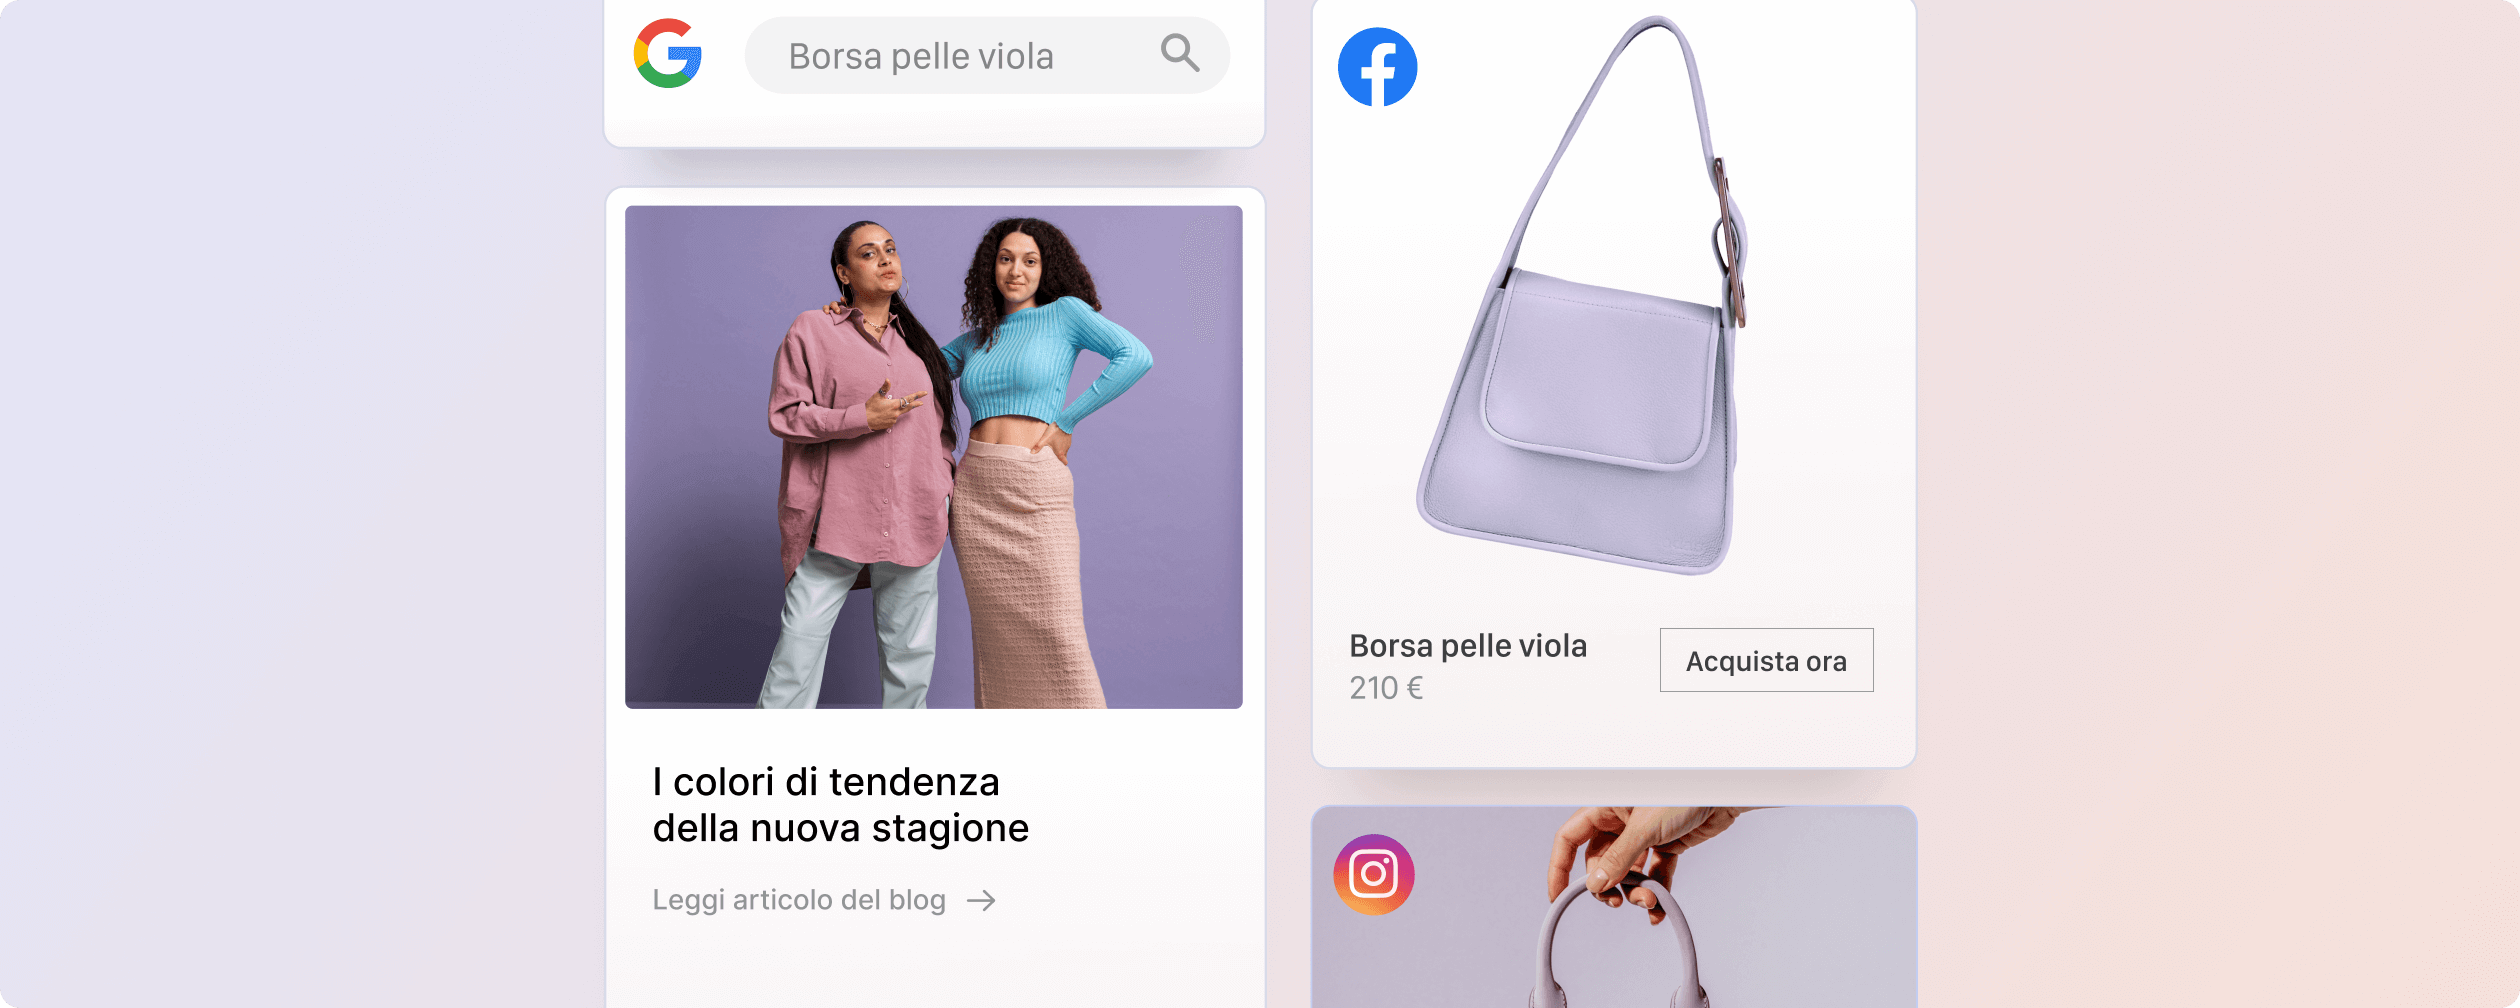 Una serie di immagini per la promozione di un brand di abbigliamento che raffigurano l’anteprima di un articolo del blog insieme ad annunci Google, Facebook e Instagram.